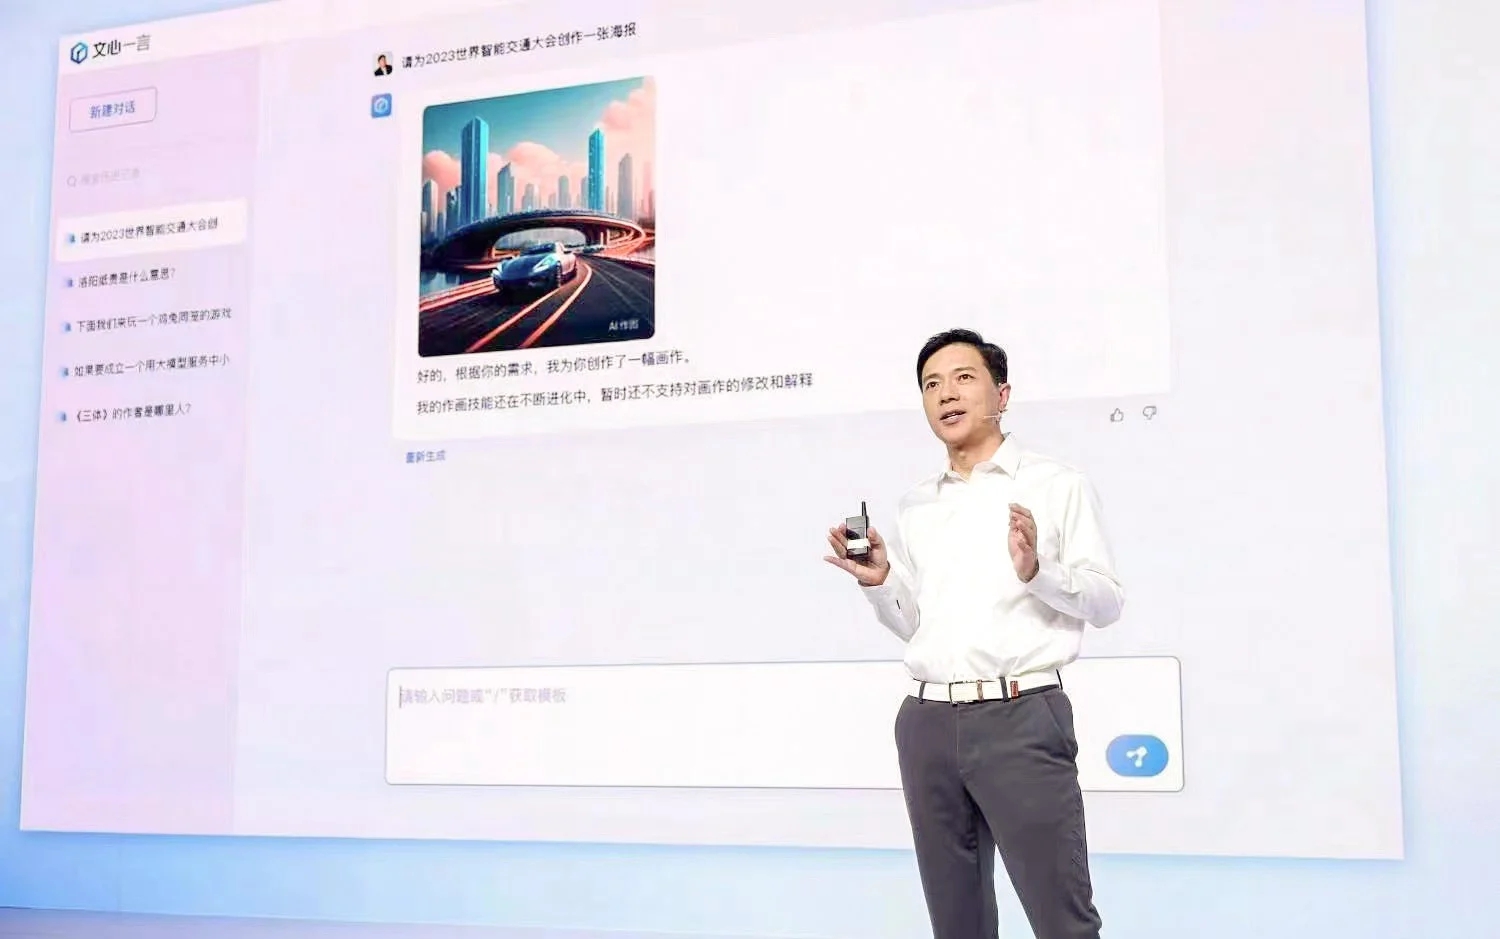 Giám đốc điều hành và đồng sáng lập của Baidu, Robin Li, đã giới thiệu Ernie Bot hỗ trợ trí tuệ nhân tạo của công ty tại một cuộc họp báo, nhưng bài thuyết trình là một video được ghi sẵn có kịch bản về những gì chatbot AI này có thể làm chứ không phải là một cuộc trình diễn trực tiếp- bởi thực tế thì màn trình diễn trực tiếp thường là mấu chốt của việc ra mắt. Ảnh: @AFP.